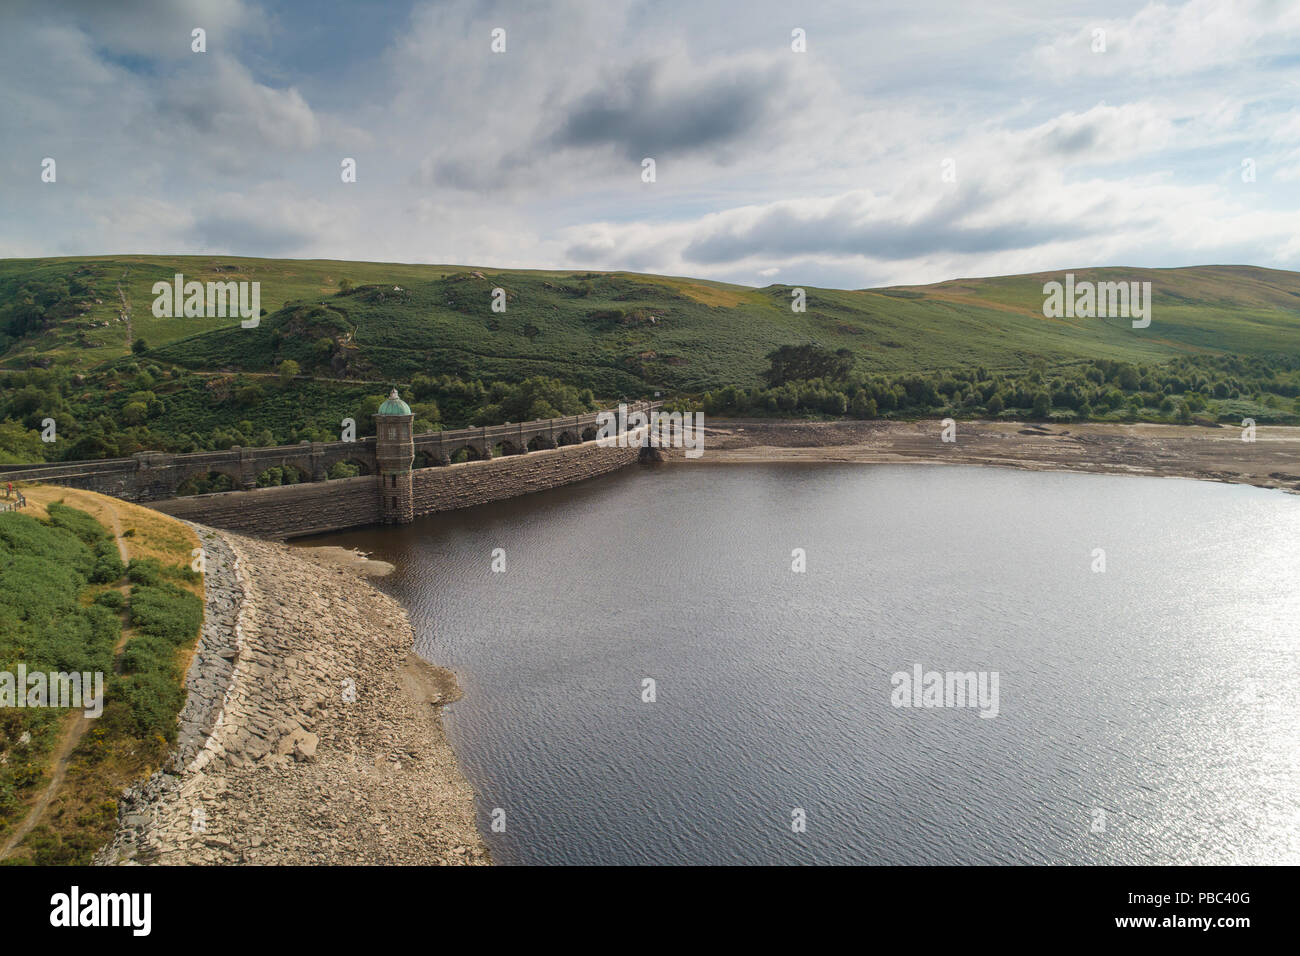 Antenne drone Foto von Craig Goch Talsperre, in der Elan Valley, Powys, Mid Wales im Juli 2018, zeigt das niedrige Niveau des Wassers nach der langen Bann von trockenem Wetter. Der Elan Valley System von Talsperren liefert 133 Milliarden Liter Wasser pro Jahr über eine Pipeline nach Birmingham Stockfoto